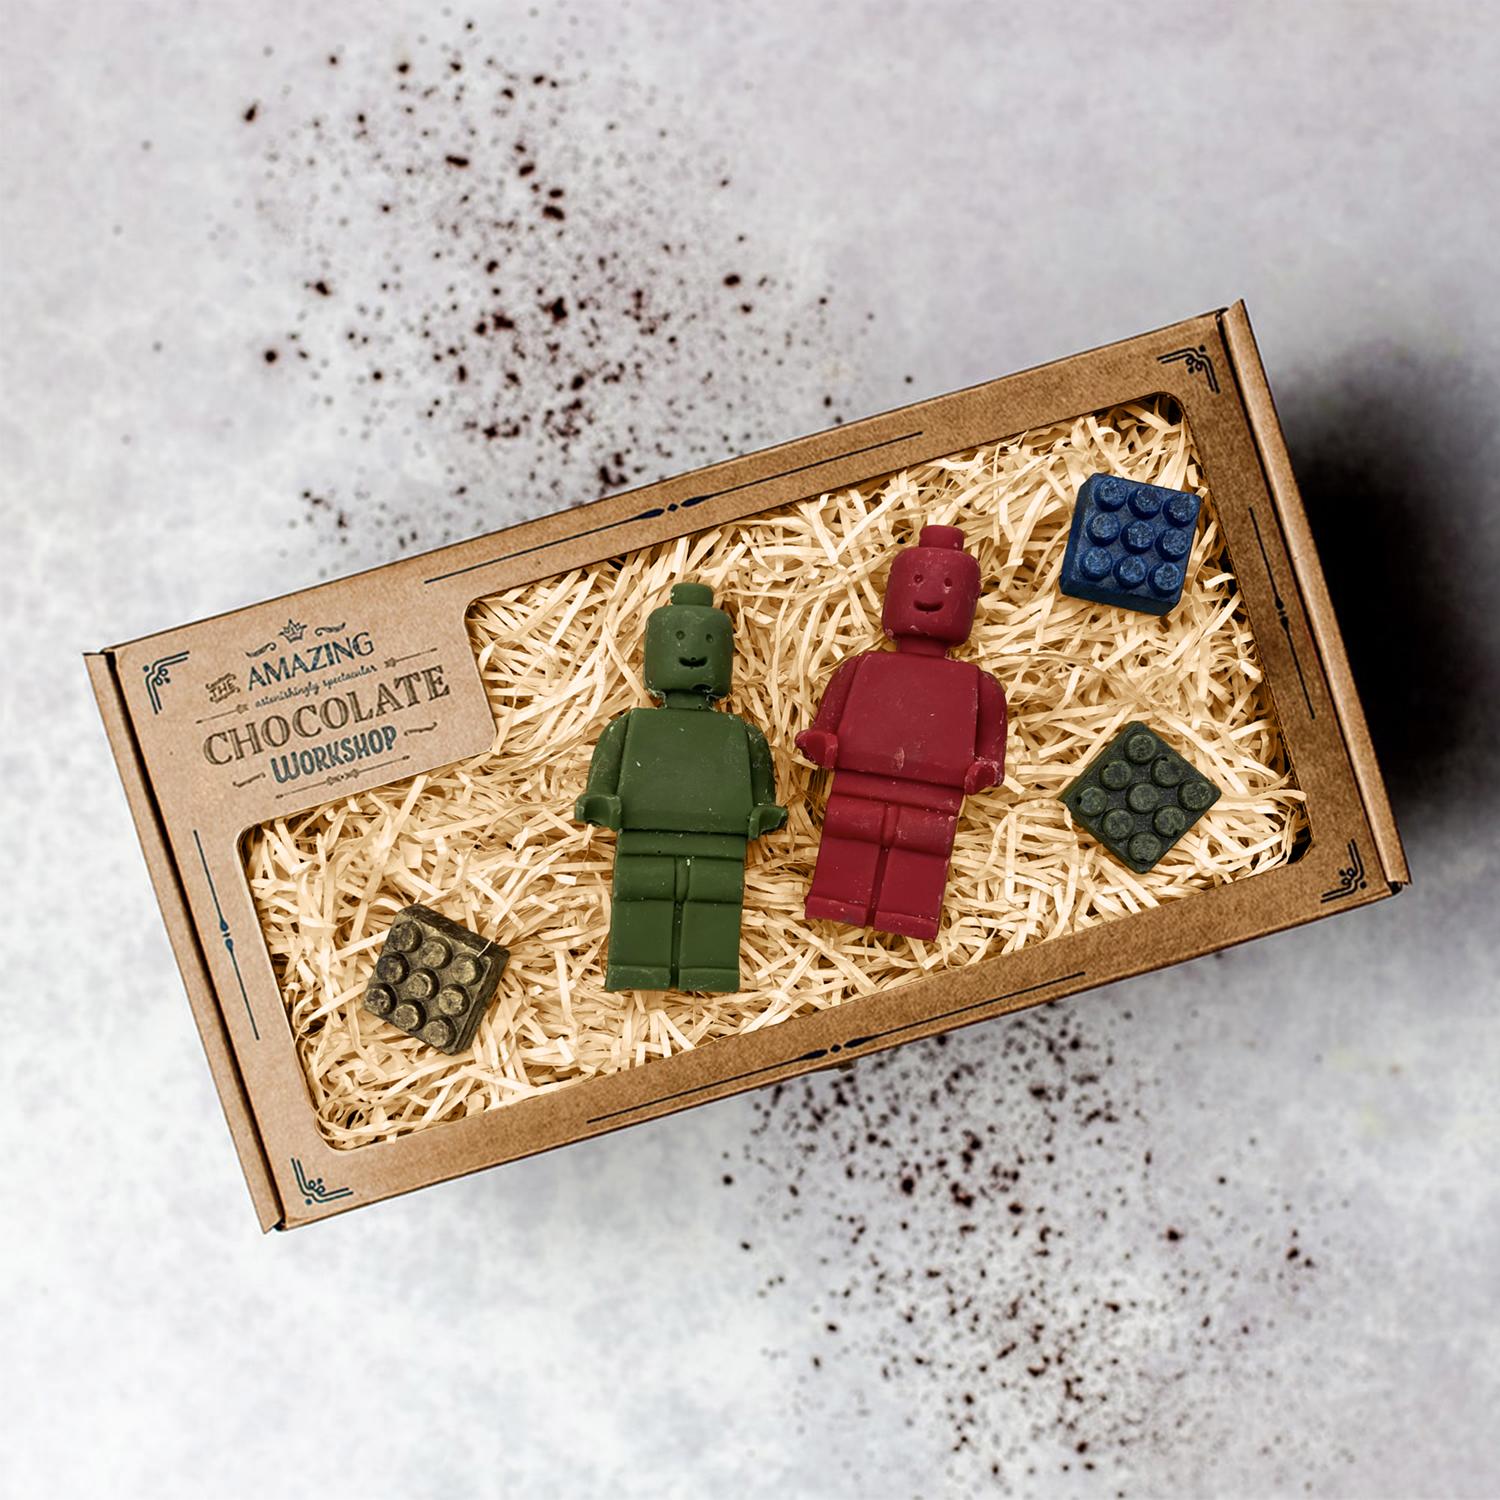 Giant Lego Gift Box Cookies & Chocolate